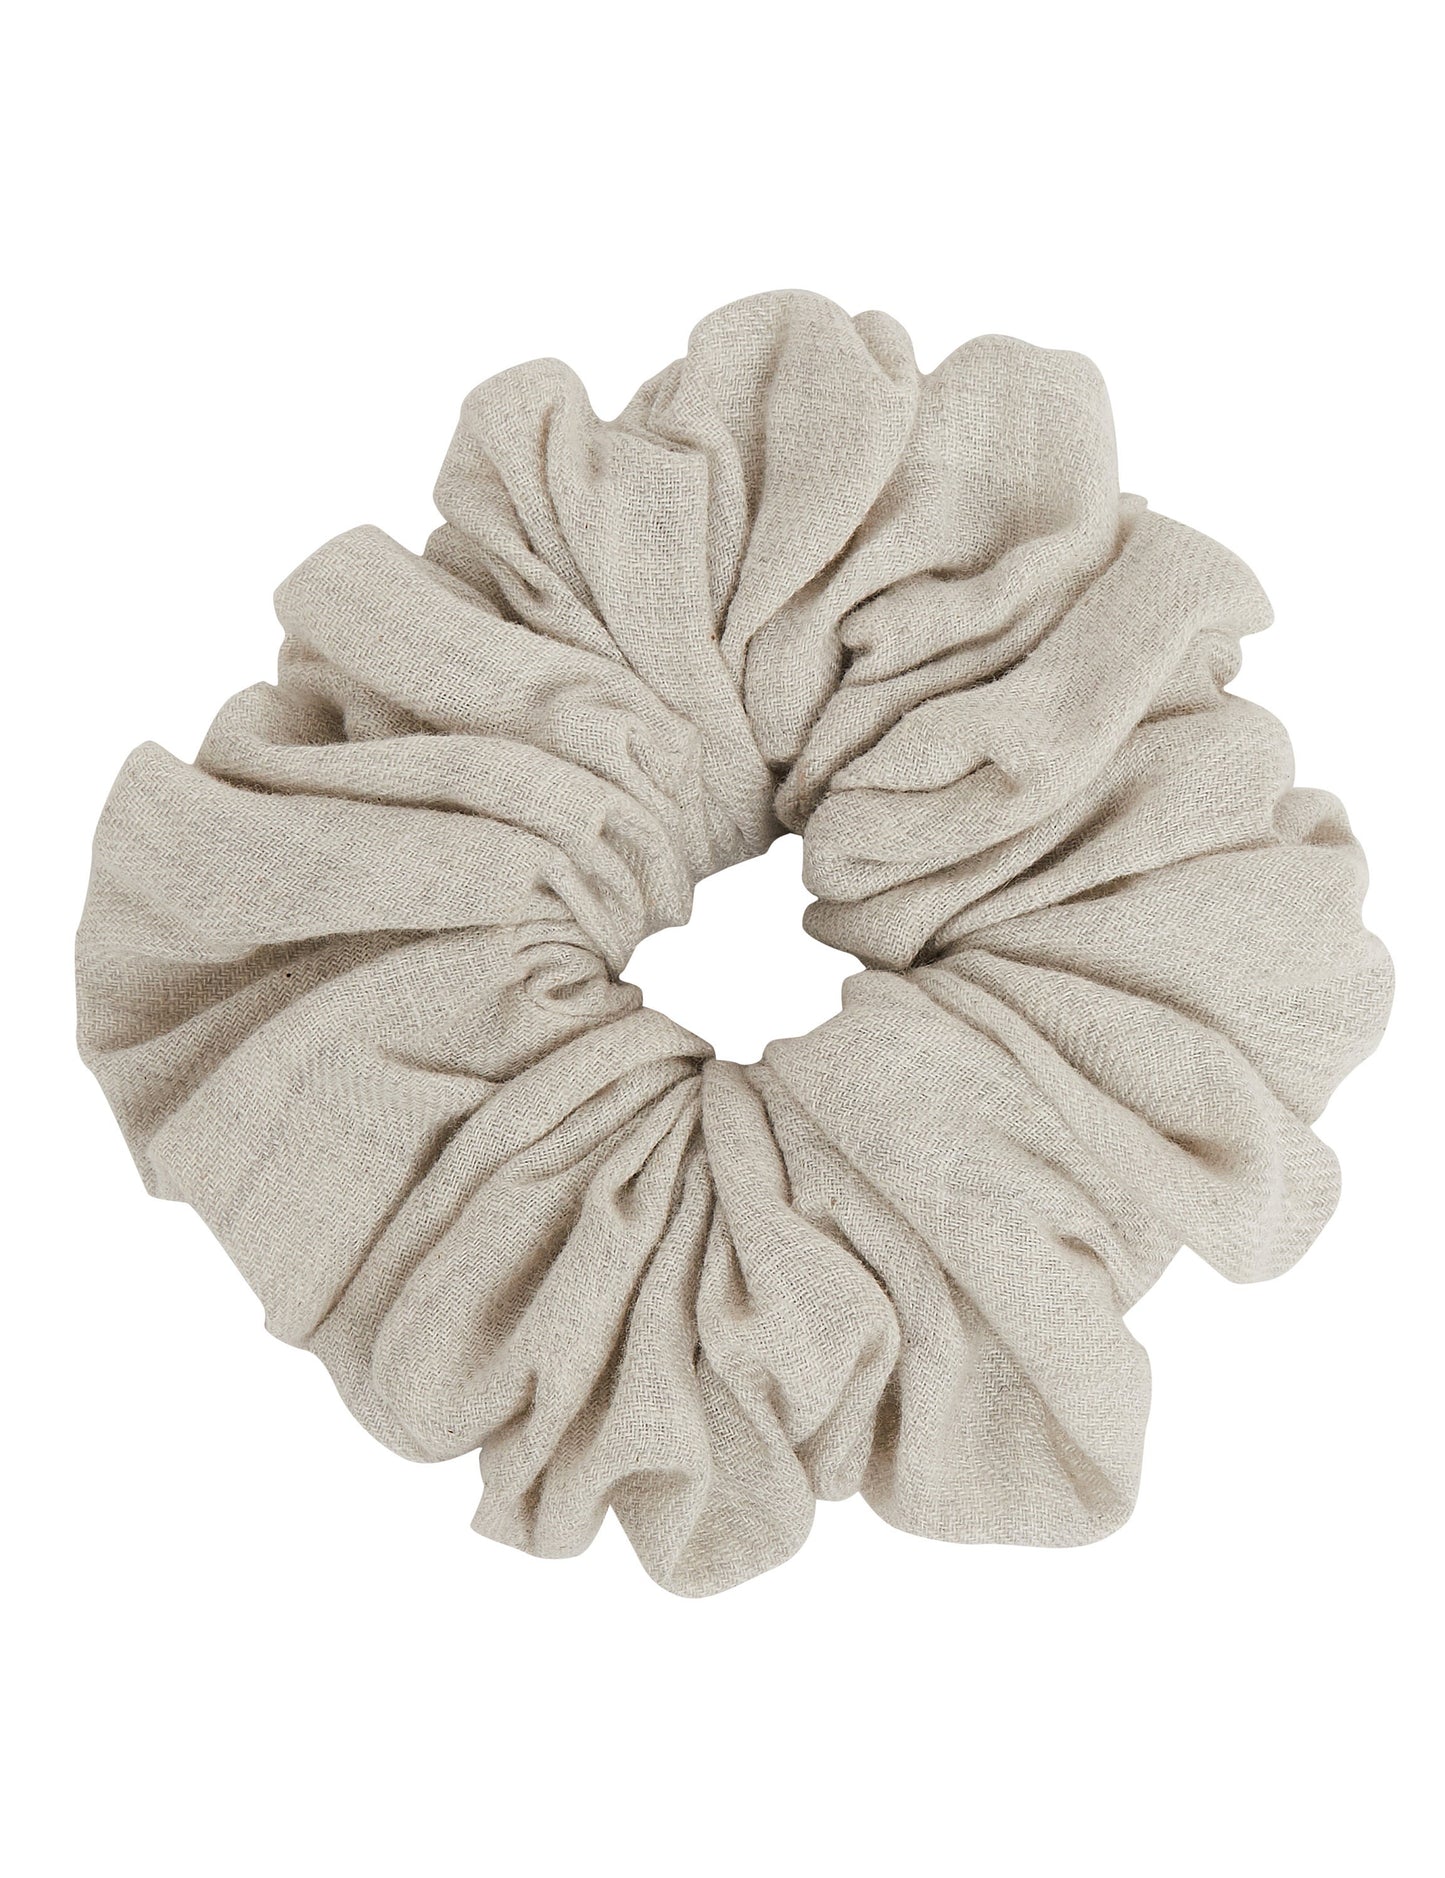 Hair Scrunchie Soft Cotton Ruffles Hair Accessories 6.00 Indigo Paisley